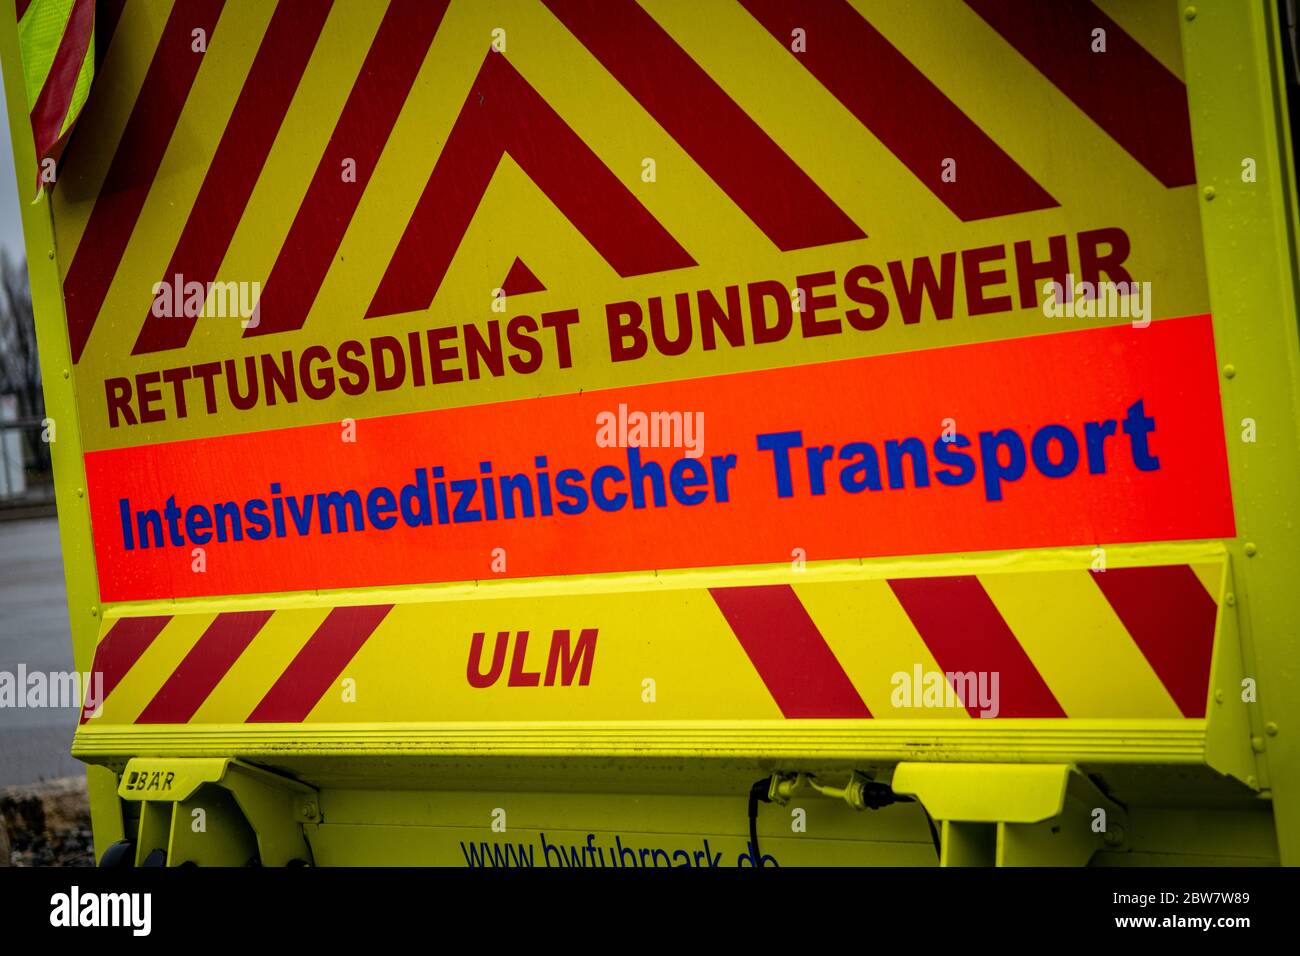 Intensivmedizinischer Transport des Bundeswehrkrankenhaus Ulm am Flughafen Stuttgart (29.03.2020) - Symbolbild Foto de stock